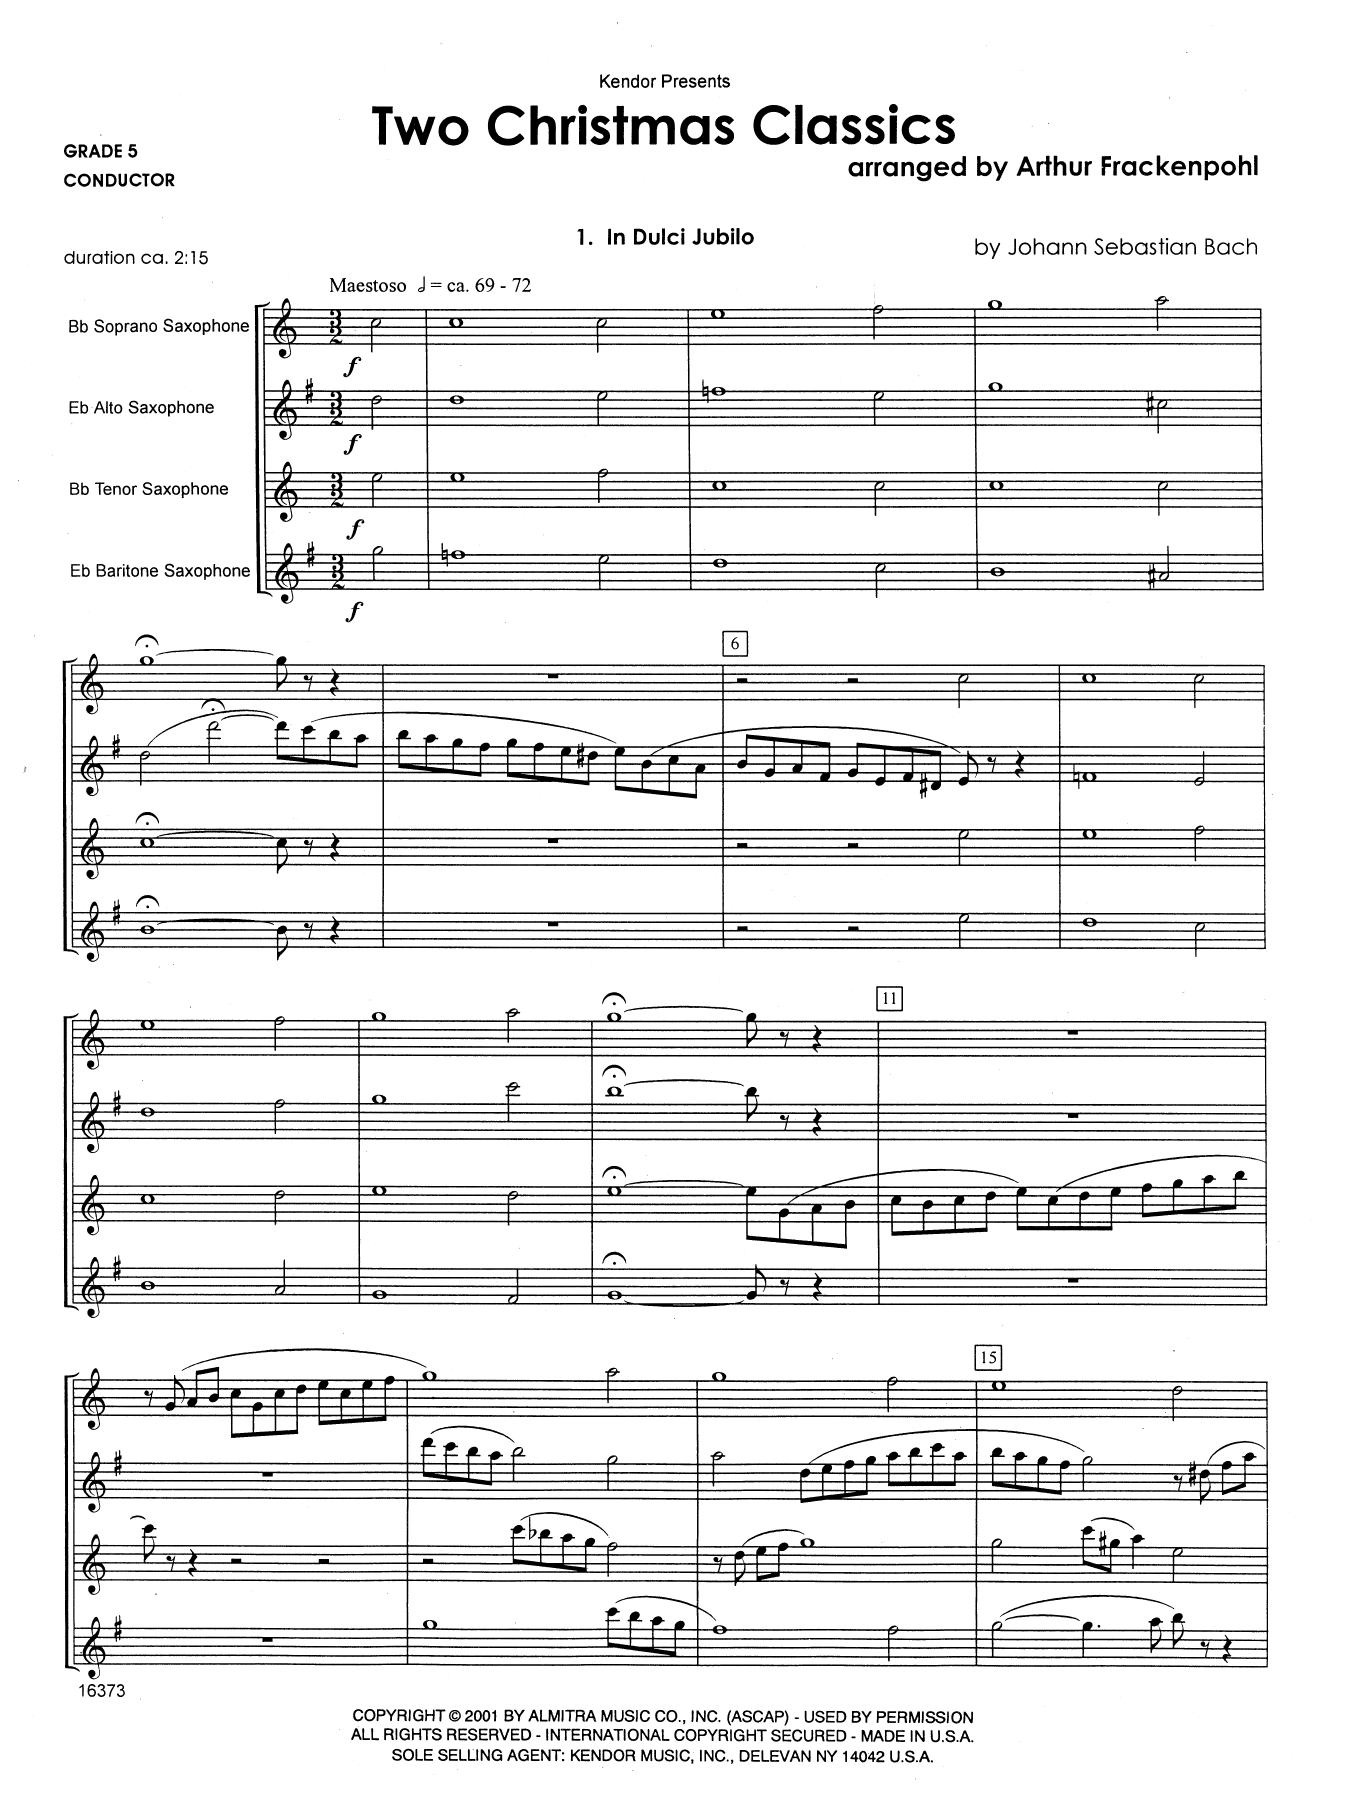 Download Arthur Frackenpohl Two Christmas Classics - Full Score Sheet Music